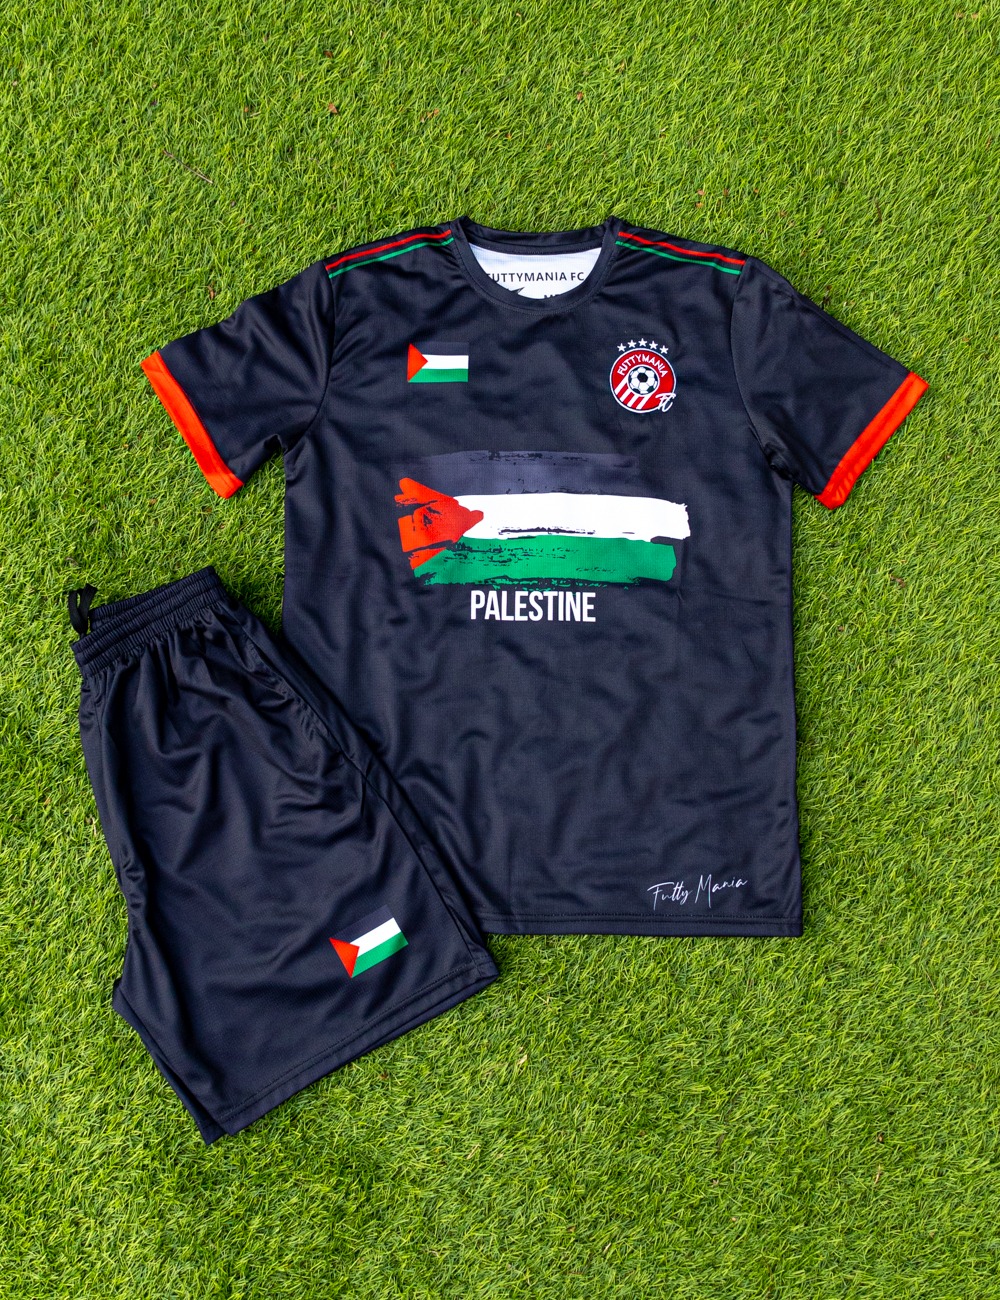 FM74 – Palestine Football Kit Merge